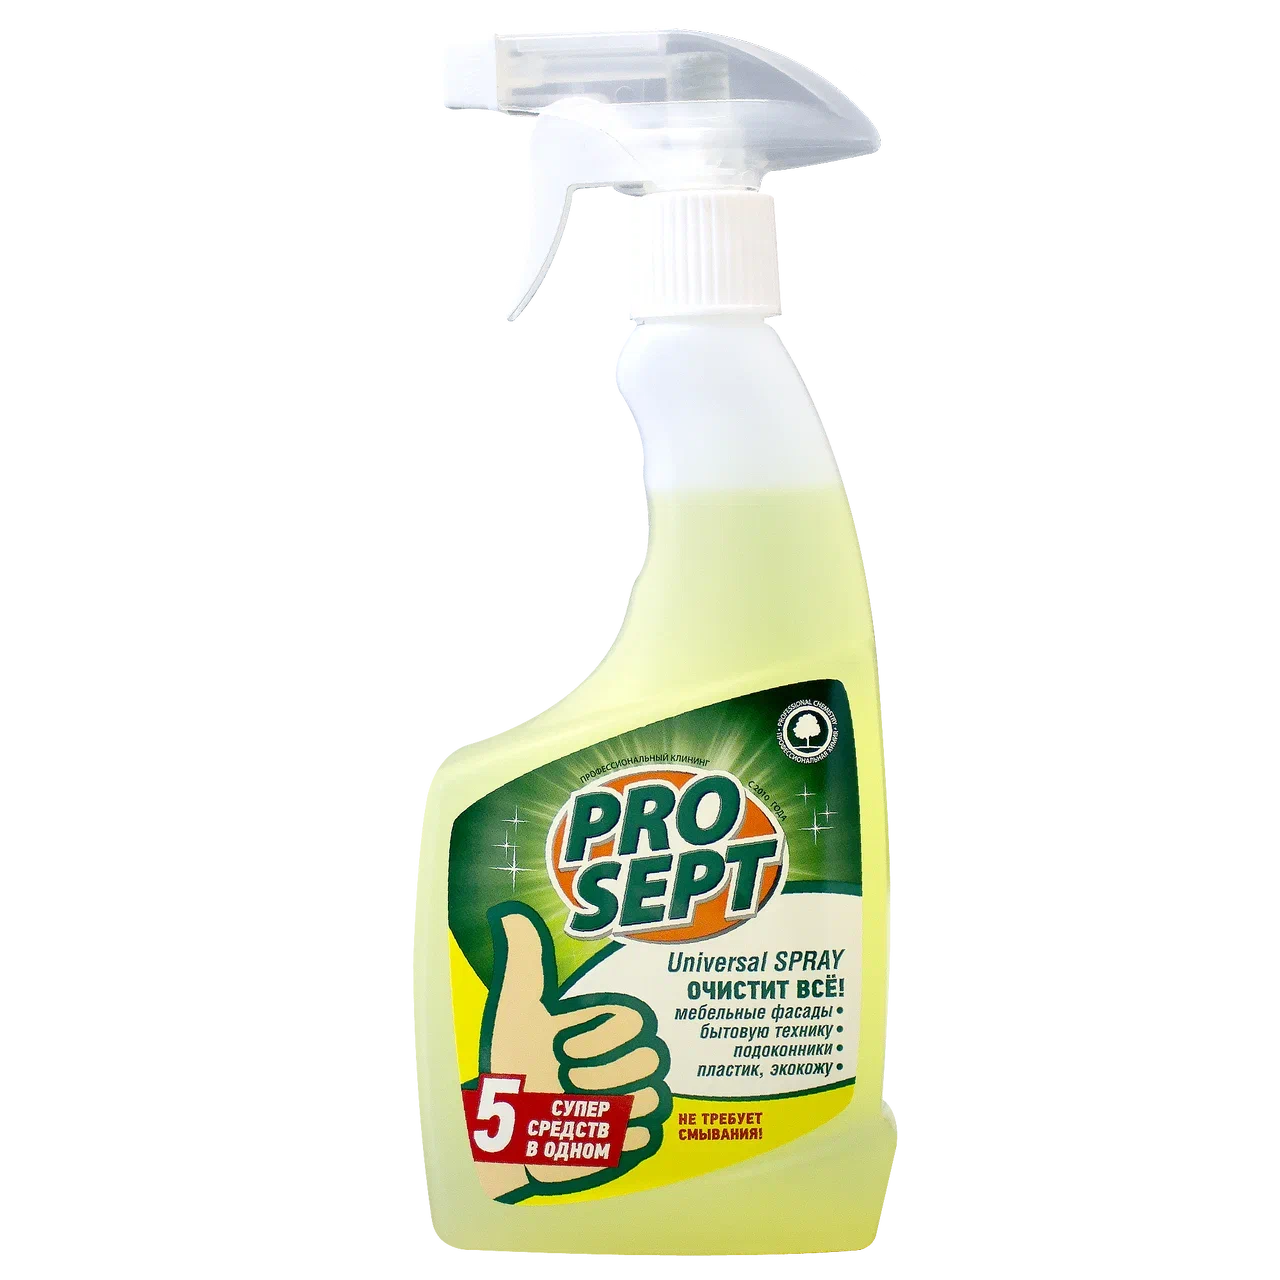 Universal Spray универсальное моющее и чистящее средство, 0,5 л. Готово к применению